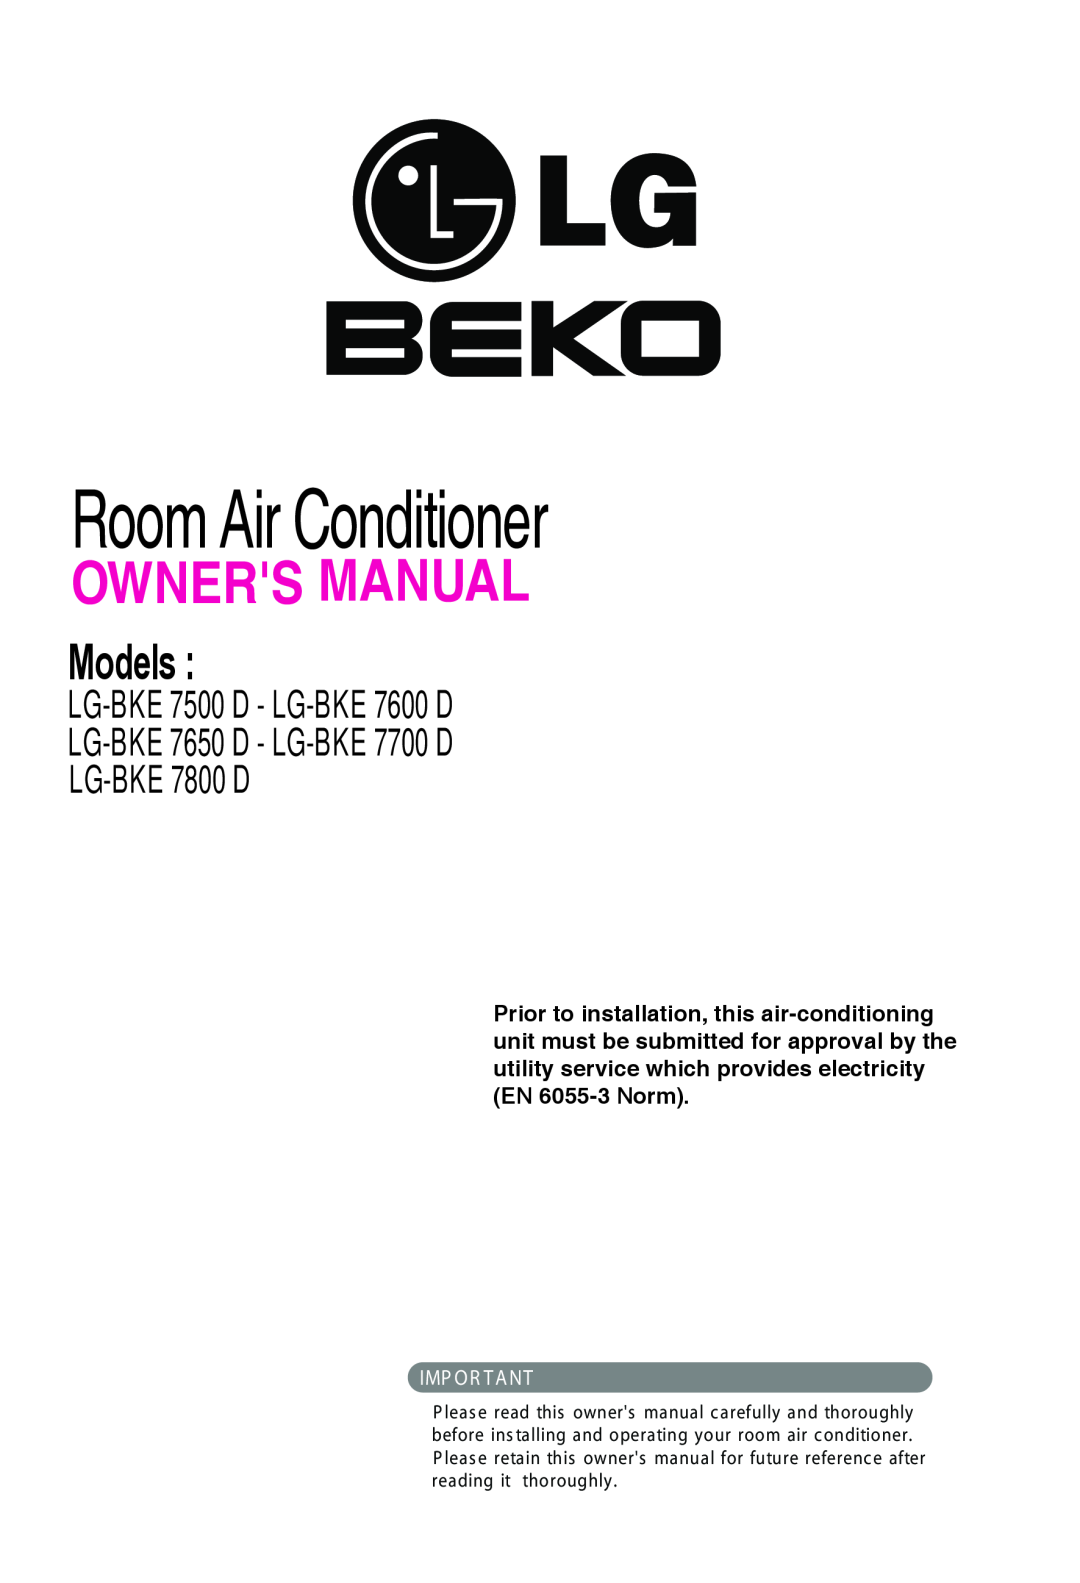 Beko LG-BKE7650 D, LG-BKE7700 D owner manual Room Air Conditioner, Models, LG-BKE7500 D - LG-BKE7600 D, Imp Or T A Nt 